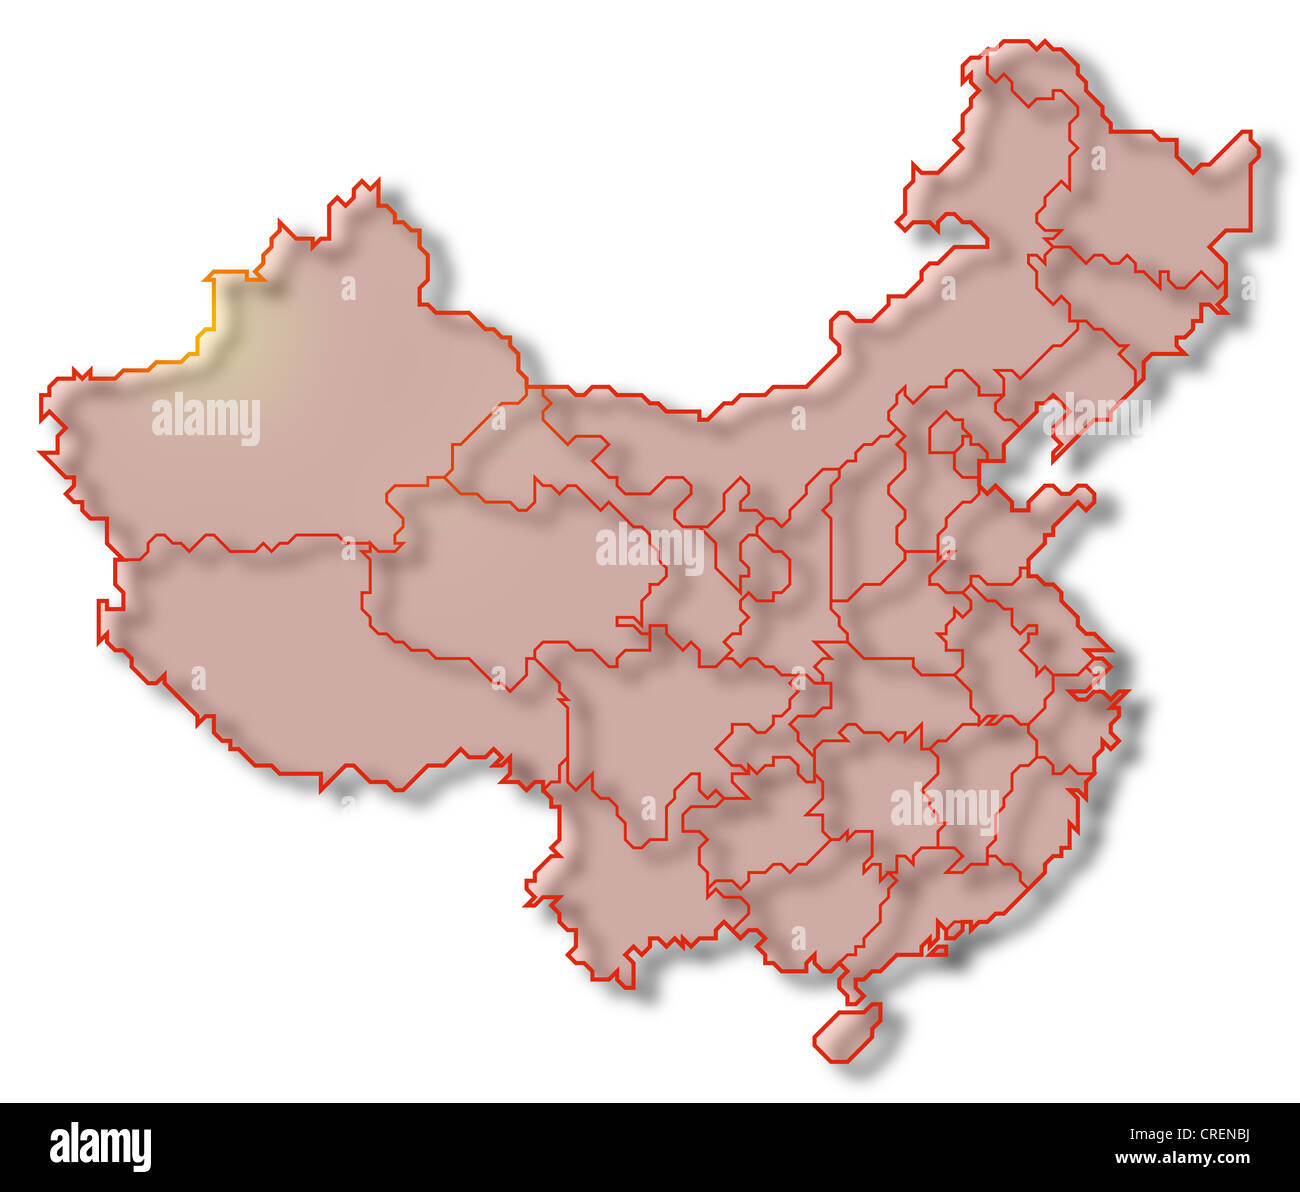 Politische Landkarte von China mit mehreren Provinzen. Stockfoto